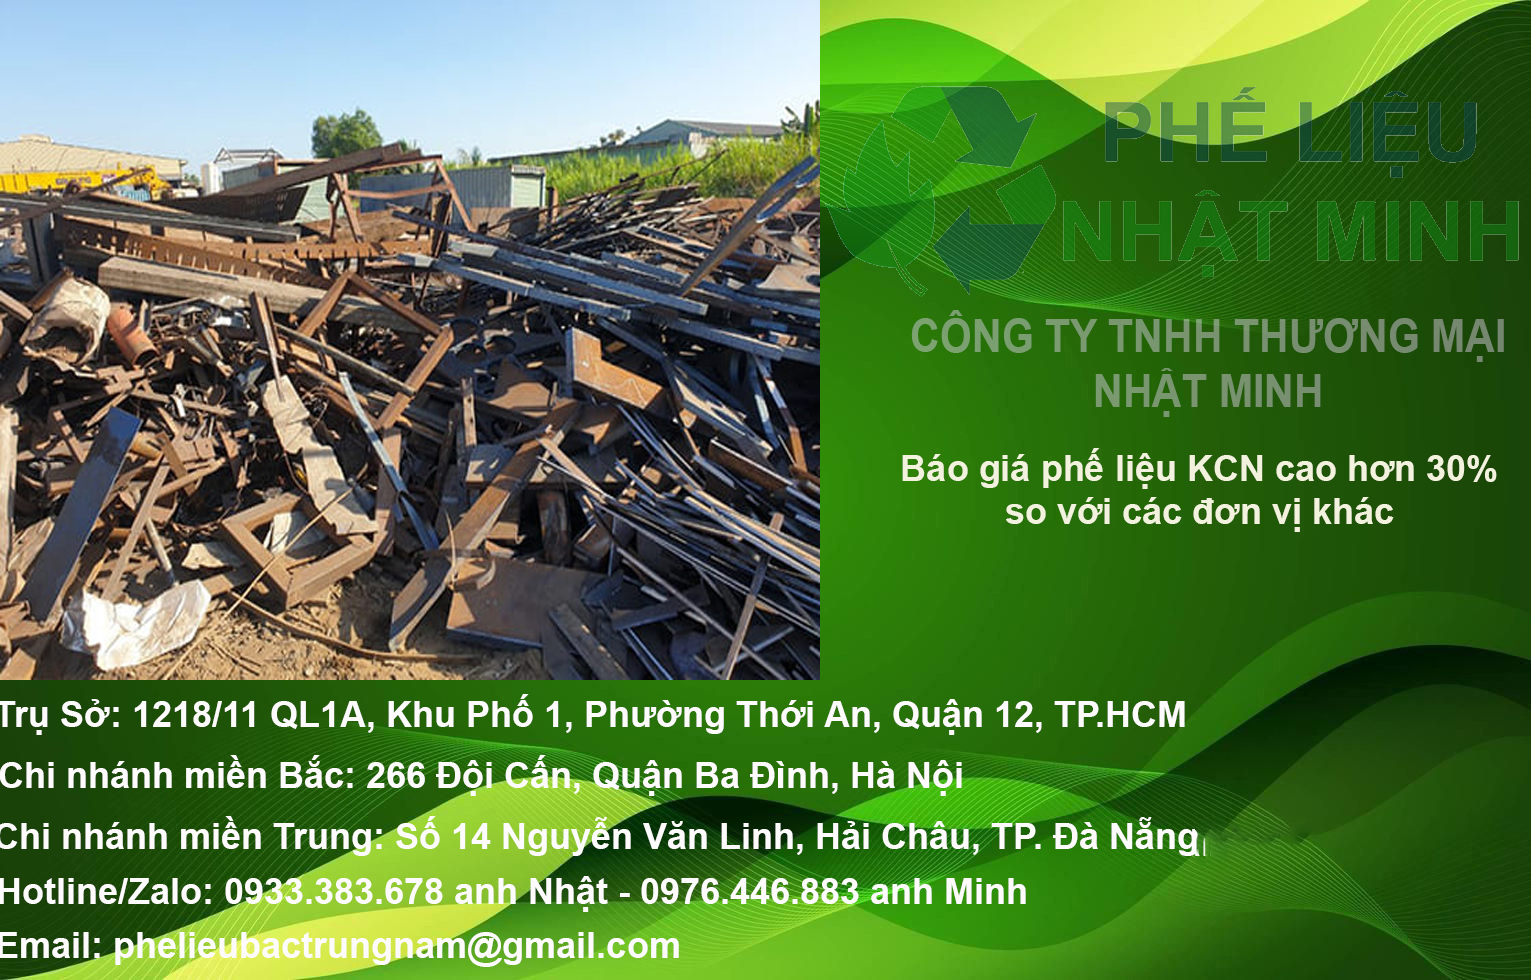 Đại lý thu mua phế liệu khu công nghiệp Thuận Đạo mở rộng